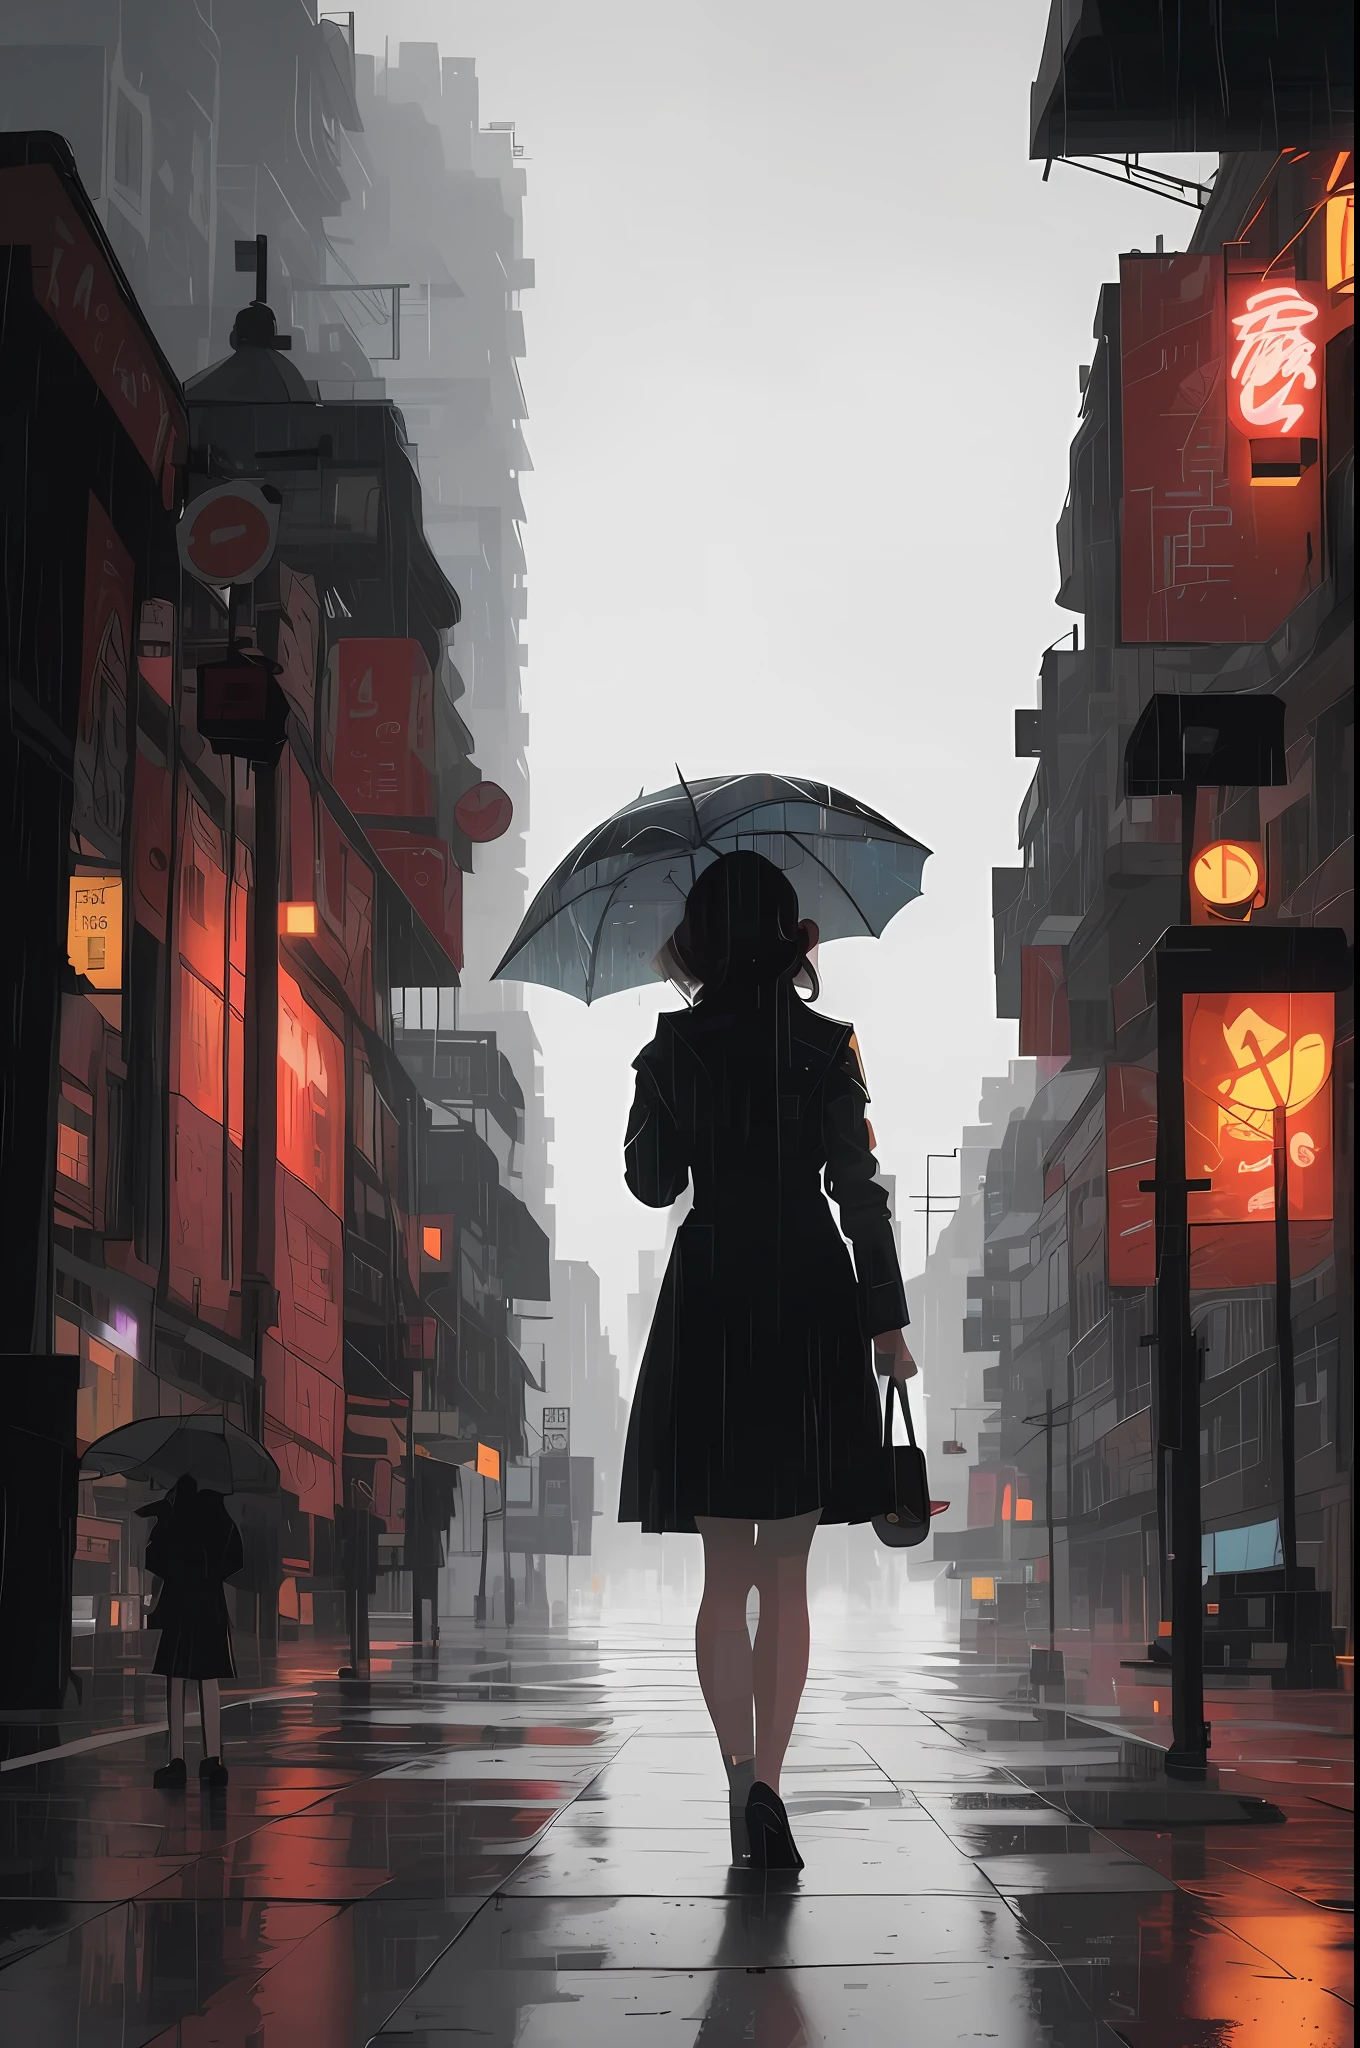 Da läuft eine Frau mit einem Regenschirm die Straße entlang, rainy cyberpunk city, in der Stadt herumwandern, regnerische Straßes in the background, artwork in the style of guweiz, in einer Stadtstraße stehen, regnerische Straße, in a cyberpunk city, style of Alena Aenami, regnerischer Abend, künstlerisch. Alena Aenami, Stilisiertes Urban-Fantasy-Kunstwerk